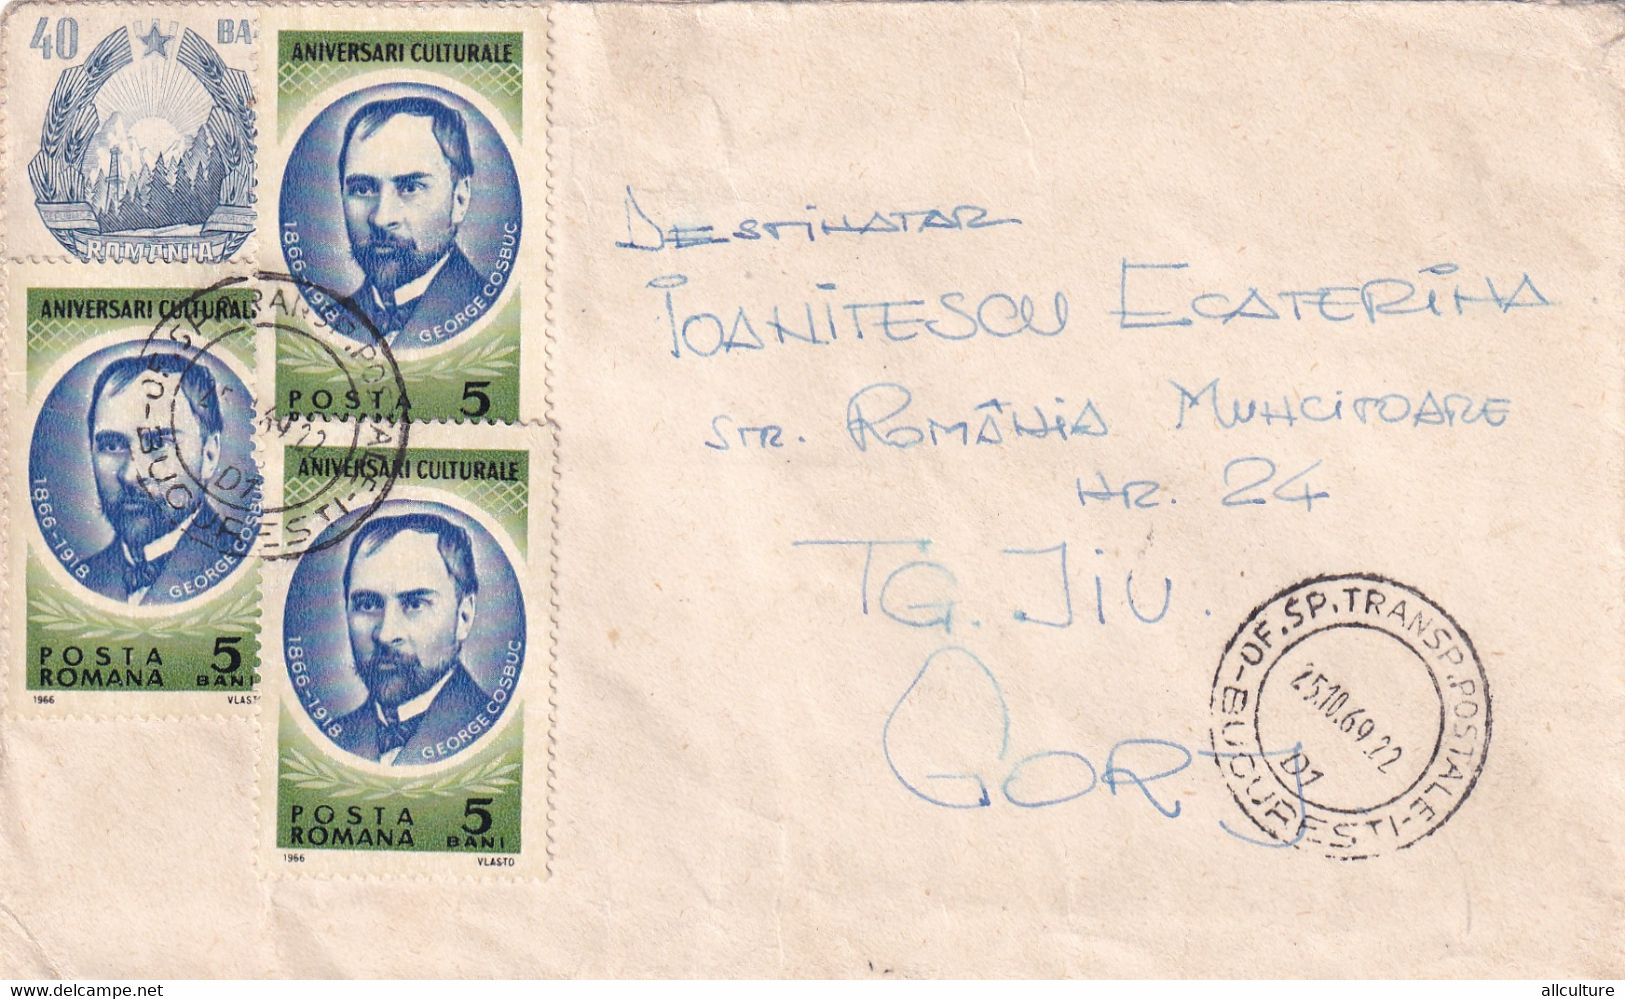 A3013 - Aniversari Culturale Posta Romana, Bucuresti Targu Jiu 1969 Republica Socialista Romania - Briefe U. Dokumente